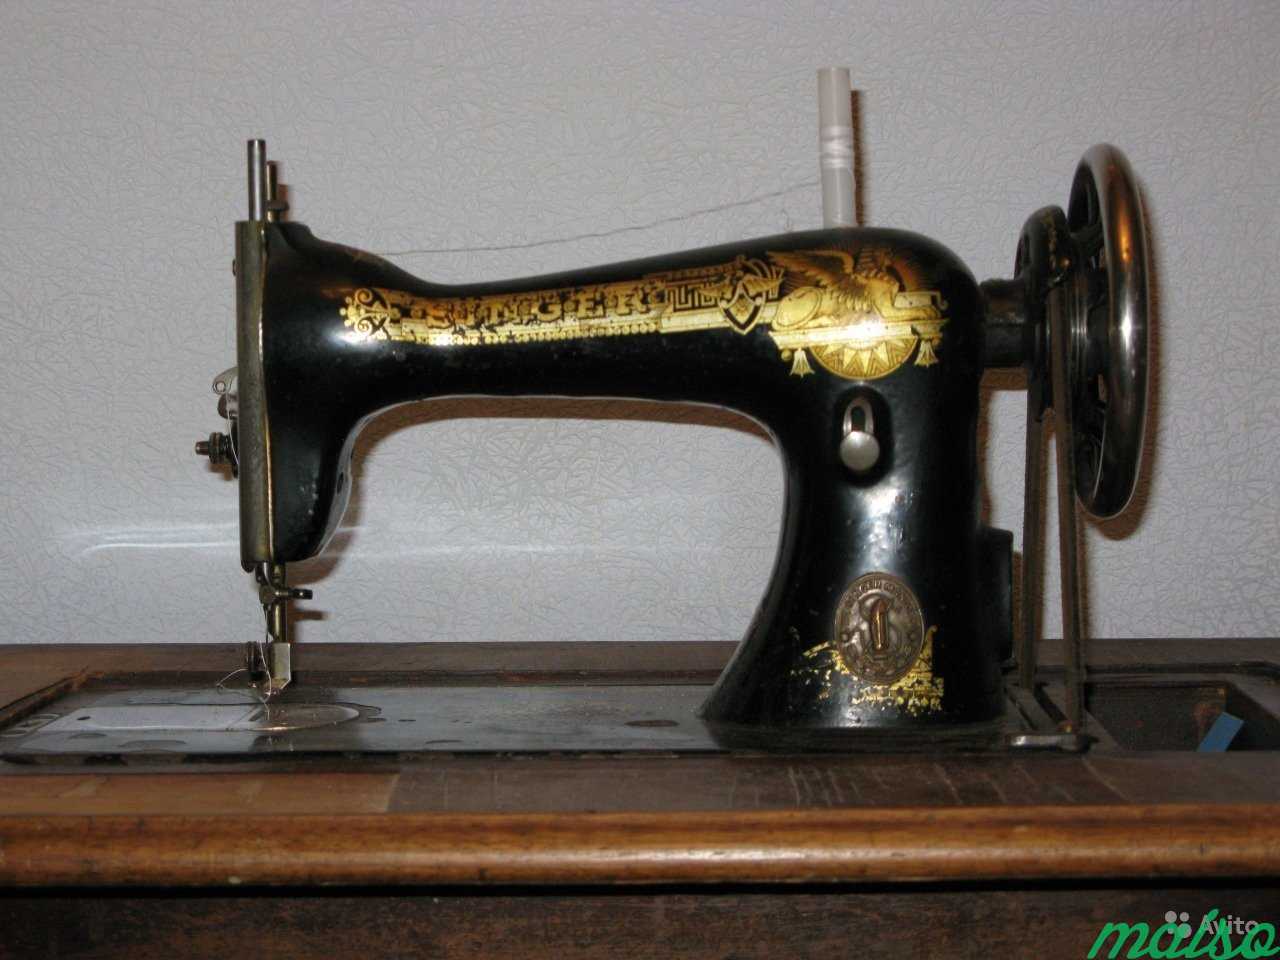 Швейная машинка (Zinger super 2001). Швейная машинка Зингер 1904 года. Швейная машинка Зингер китайского производства. Очень редкие Швейные машинки Зингер. Швейная машинка зингер отзывы